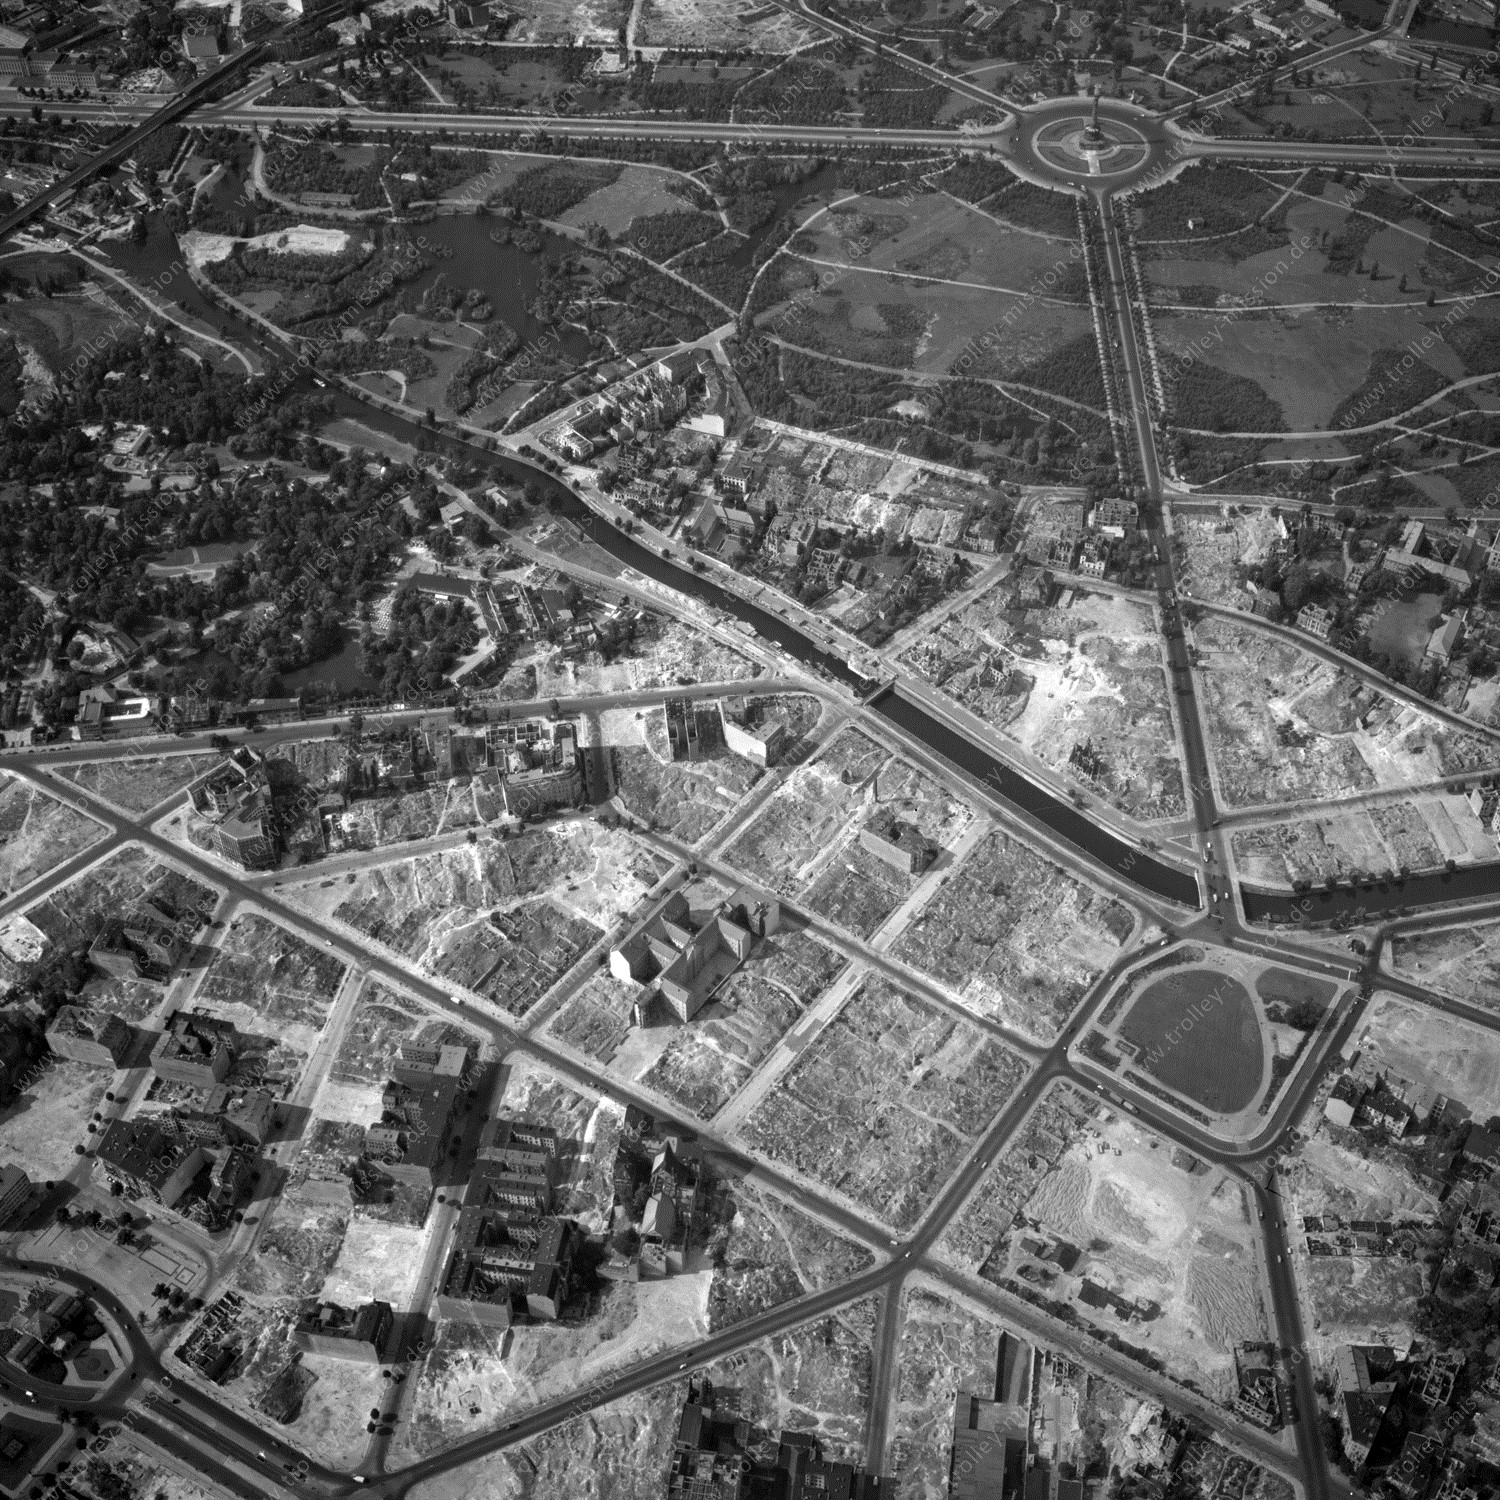 Alte Fotos und Luftbilder von Berlin - Luftbildaufnahme Nr. 03 - Historische Luftaufnahmen von West-Berlin aus dem Jahr 1954 - Flugstrecke Yankee